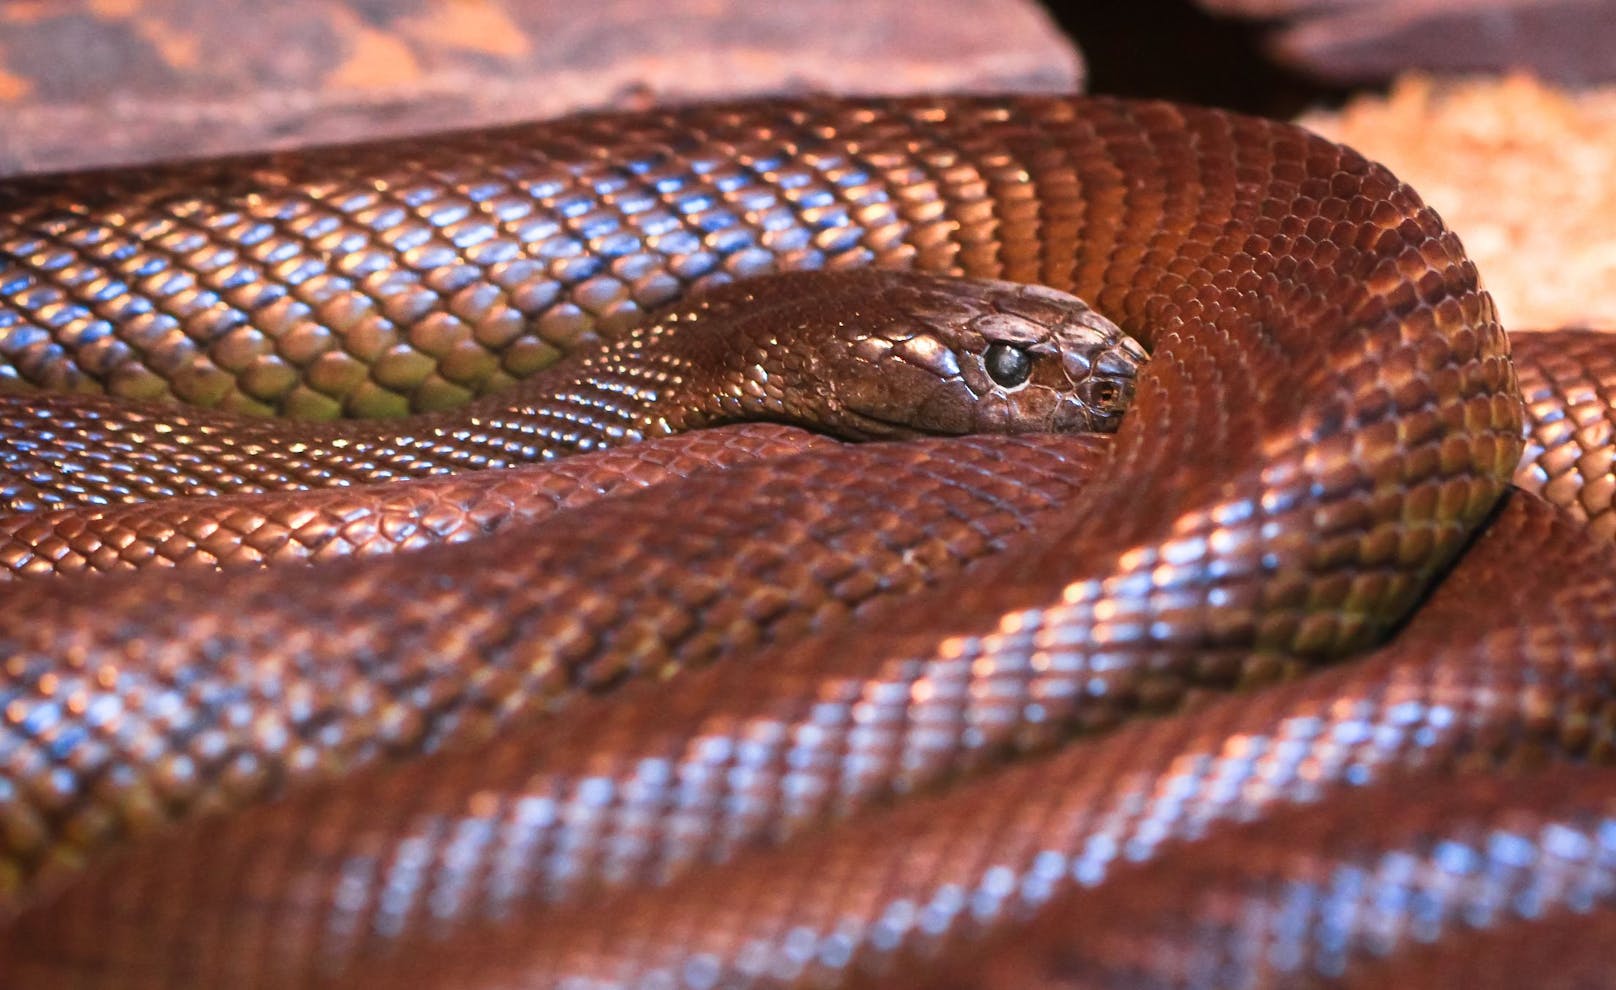 Der "<strong>Inland-Taipan</strong>" gilt als die giftigste Schlange der Welt. Man findet sie in Australien - ihr Gift reicht für mehr als 100 Menschen.